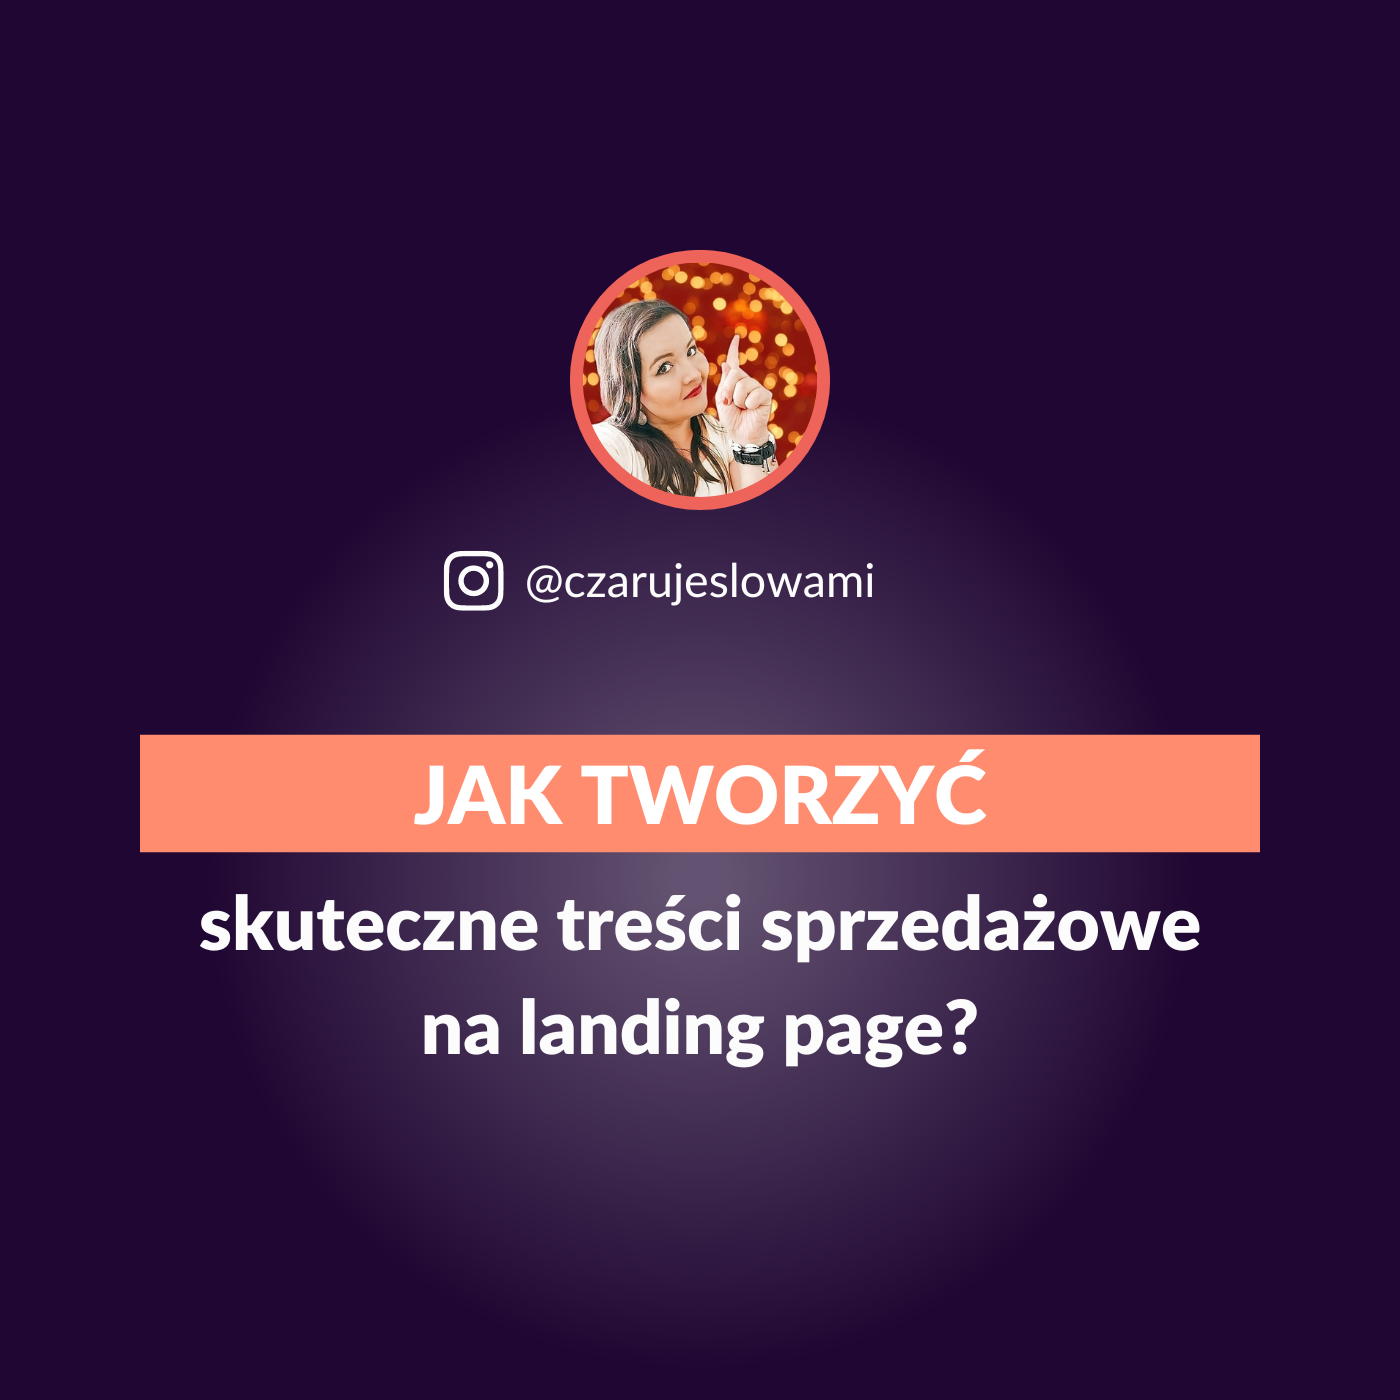 jak-tworzyc-skuteczne-tresci-na-landing-page-Tysiac-Znakow-Sylwia-Rospondek-CzarujeSlowami